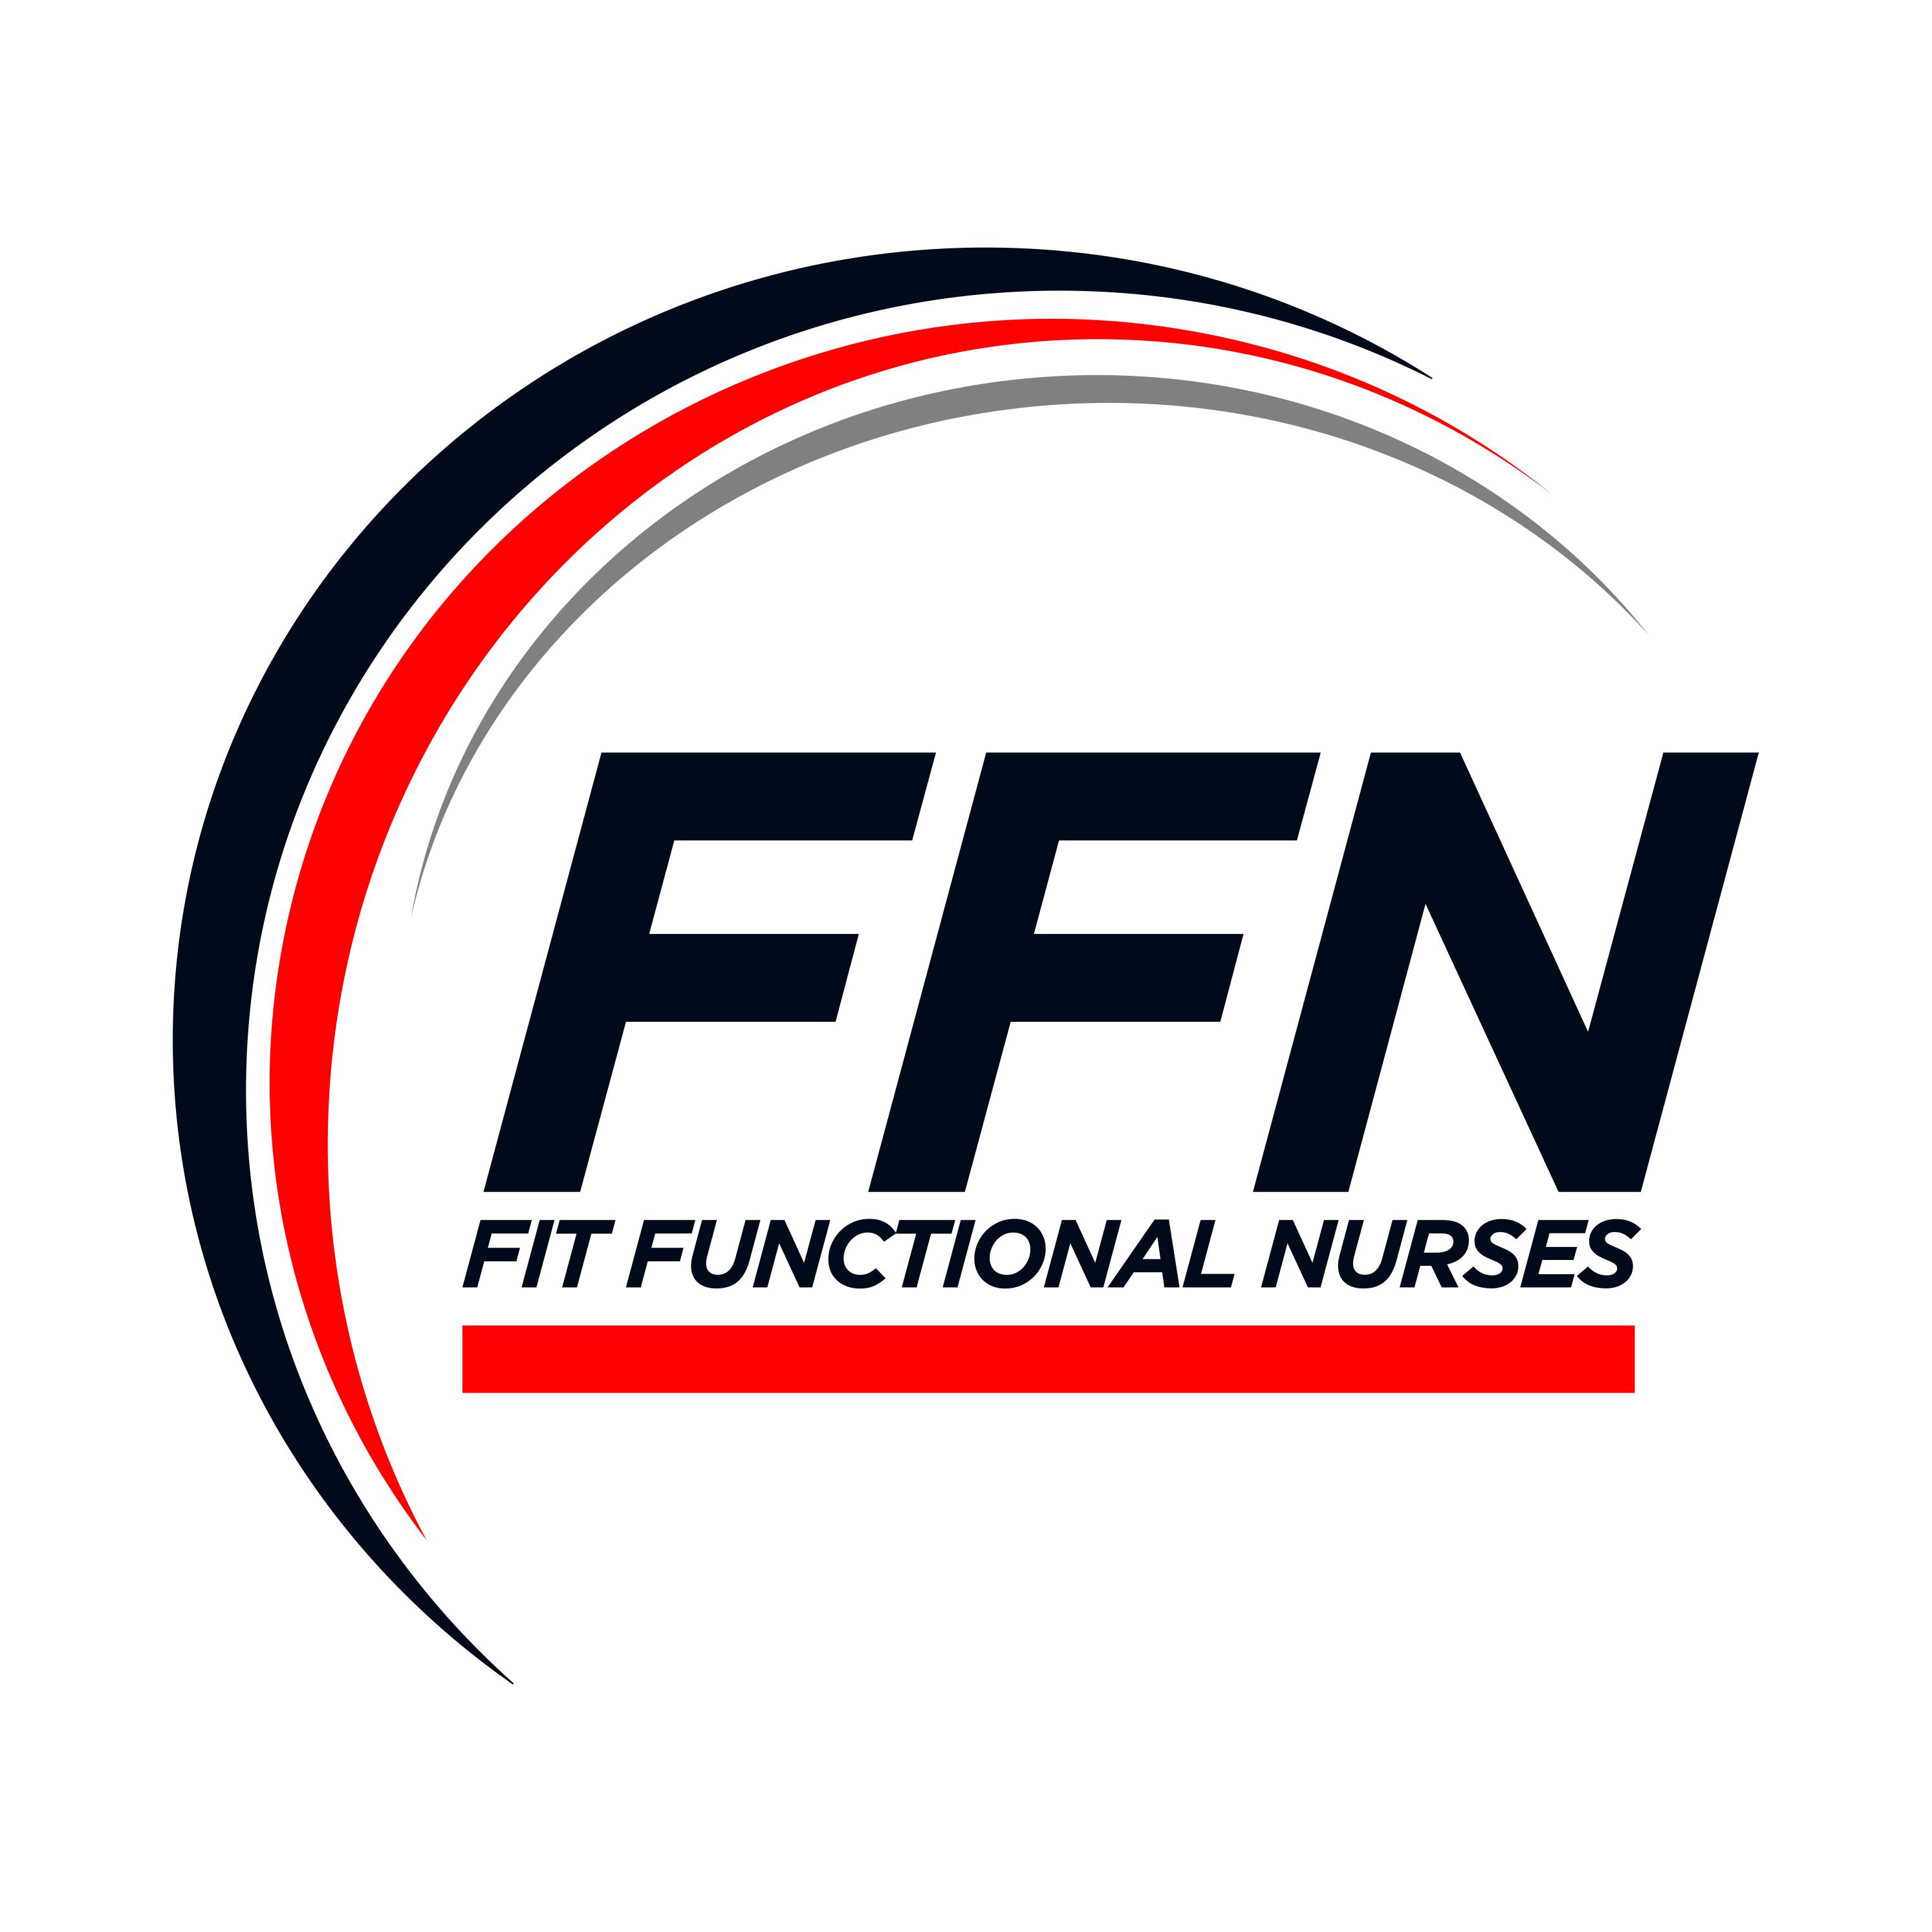 Fit Functional Nurses